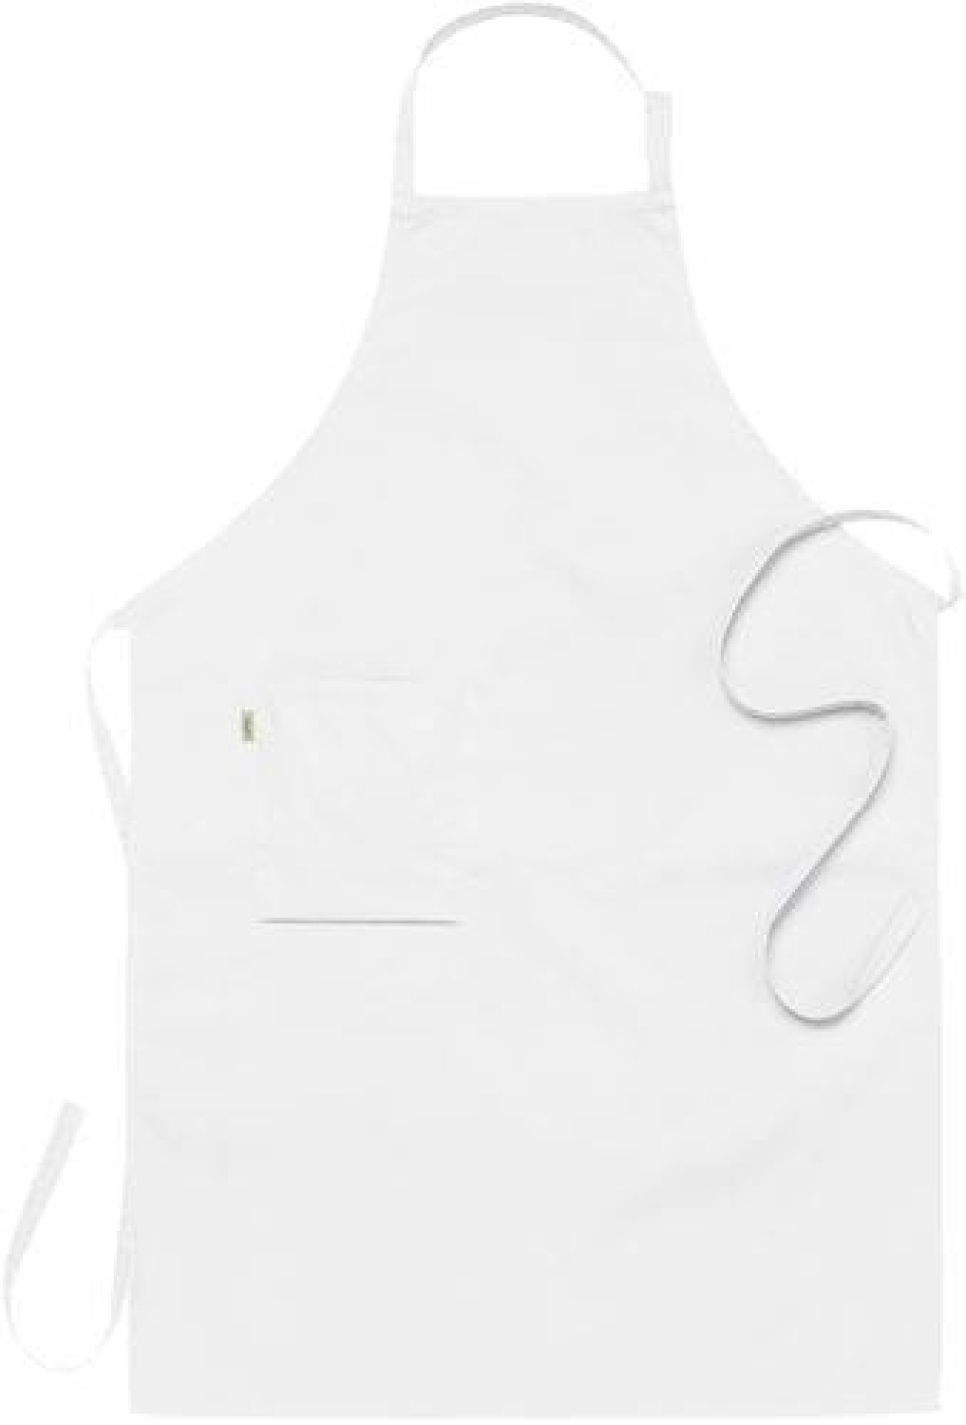 Fartuch na szelkach, biały 75 x 110 cm - Segers w grupie Gotowanie / Tekstylia kuchenne / Fartuchy w The Kitchen Lab (1092-10846)